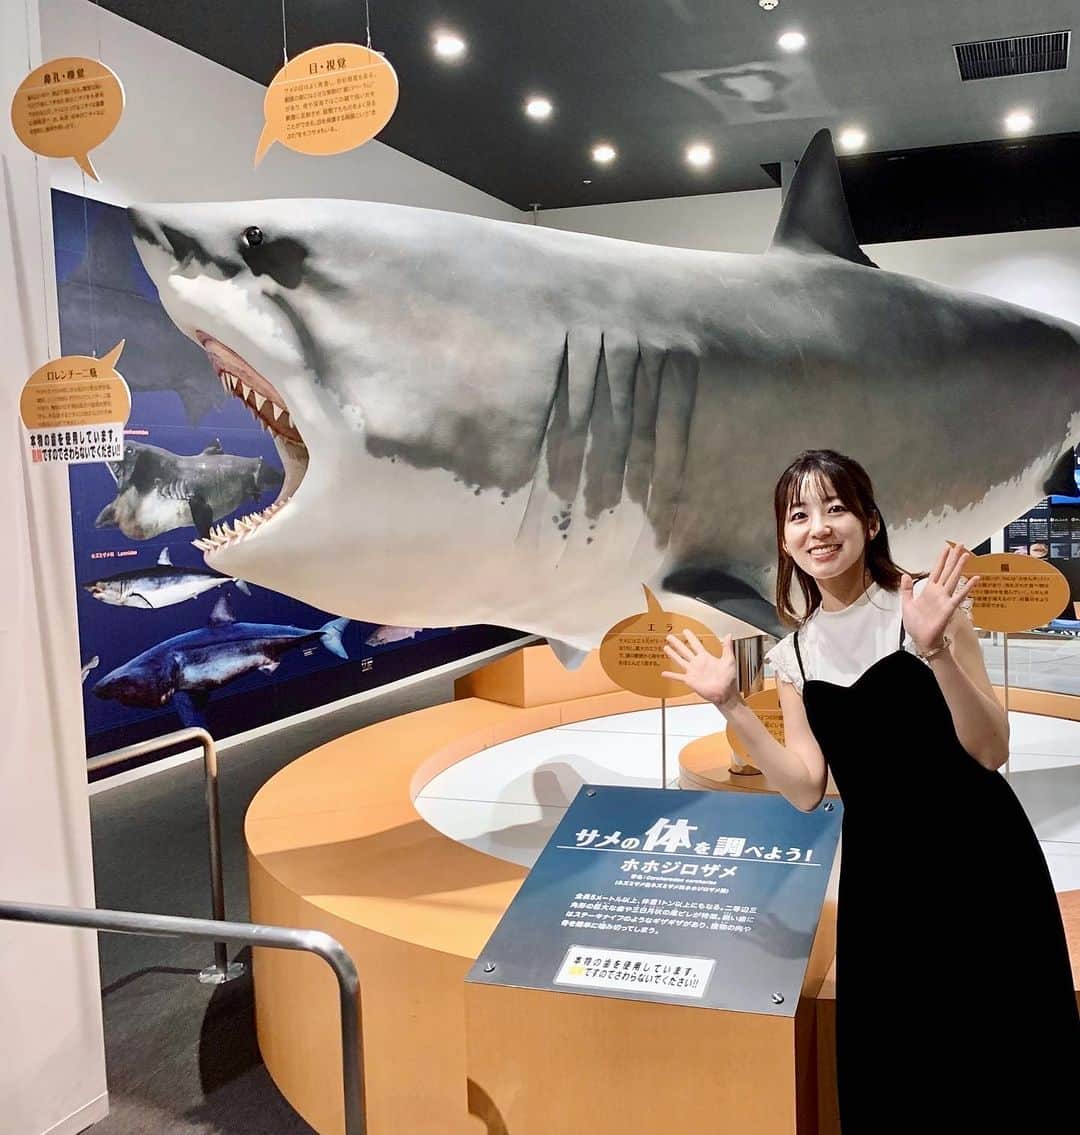 はたゆりこのインスタグラム：「宮城県・気仙沼に行ってきました🚄part.2 ━━━━━━━━━━━━━━━━━━━━━ フリーライブをおこなった気仙沼「海の市」には「シャークミュージアム」という日本で唯一のサメの博物館があります🦈  気仙沼はサメの水揚げ日本一で、日本屈指の良質なフカヒレの産地。 シャークミュージアムではサメの生態を紹介するほか、東日本大震災からの復興をテーマとした展示もありました。東日本大震災の被害と復興の様子を紹介したシアターもあり、鈴木あいちゃん @suzukiai1015 が音楽を担当した映像も見ることが出来ます。  気仙沼はホヤも有名なんだそう☺️フリーライブのあと「海の市」内の「カネト水産」で人生初のホヤをいただきました！ あまりなじみのない食材で好き嫌いが分かれそうですが、新鮮で臭みもなく、おいしくいただきました😋 ホヤの写真は撮り忘れてしまいましたが💦気仙沼市の観光キャラクター・海の子「ホヤぼーや」の顔だしパネルの写真ならありました🤭笑  ≪お知らせ≫ 6月にmosh Grab'nGoで開催した「ふわトロLIVE」のライブ映像が販売開始となりました！オフショットも含め約1時間の特別映像となっております♩ 鈴木あいちゃんのオンラインストアにてご購入いただけます。ぜひよろしくお願い致します＊  ≪出演情報≫ ◼8月13日(日)15:20〜/18:20〜 ところざわサクラタウン野外フリーライブ（埼玉県所沢市） ◼8月26日(土)昼「ひだまりライブ」（銀座Miiya Cafe） ◼9月16日(土)昼「うたこまち in大阪 Vol.1」（大阪・北浜 雲州堂） ◼9月17日(日)昼「うたこまち in大阪 Vol.2」（大阪・北浜 雲州堂） 詳しくは「はたゆりこオフィシャルサイト」をご覧ください♩  #気仙沼 #気仙沼海の市 #シャークミュージアム #サメ #フカヒレ #ホヤ #ないわん #気仙沼内湾商業施設 #東北復興支援 #東日本大震災 #復興 #シンガーソングライター #鈴木あい #カネト水産 #気仙沼グルメ #海鮮丼 #海鮮丼ランチ #うみいち #ホヤぼーや #顔だしパネルやりがち」